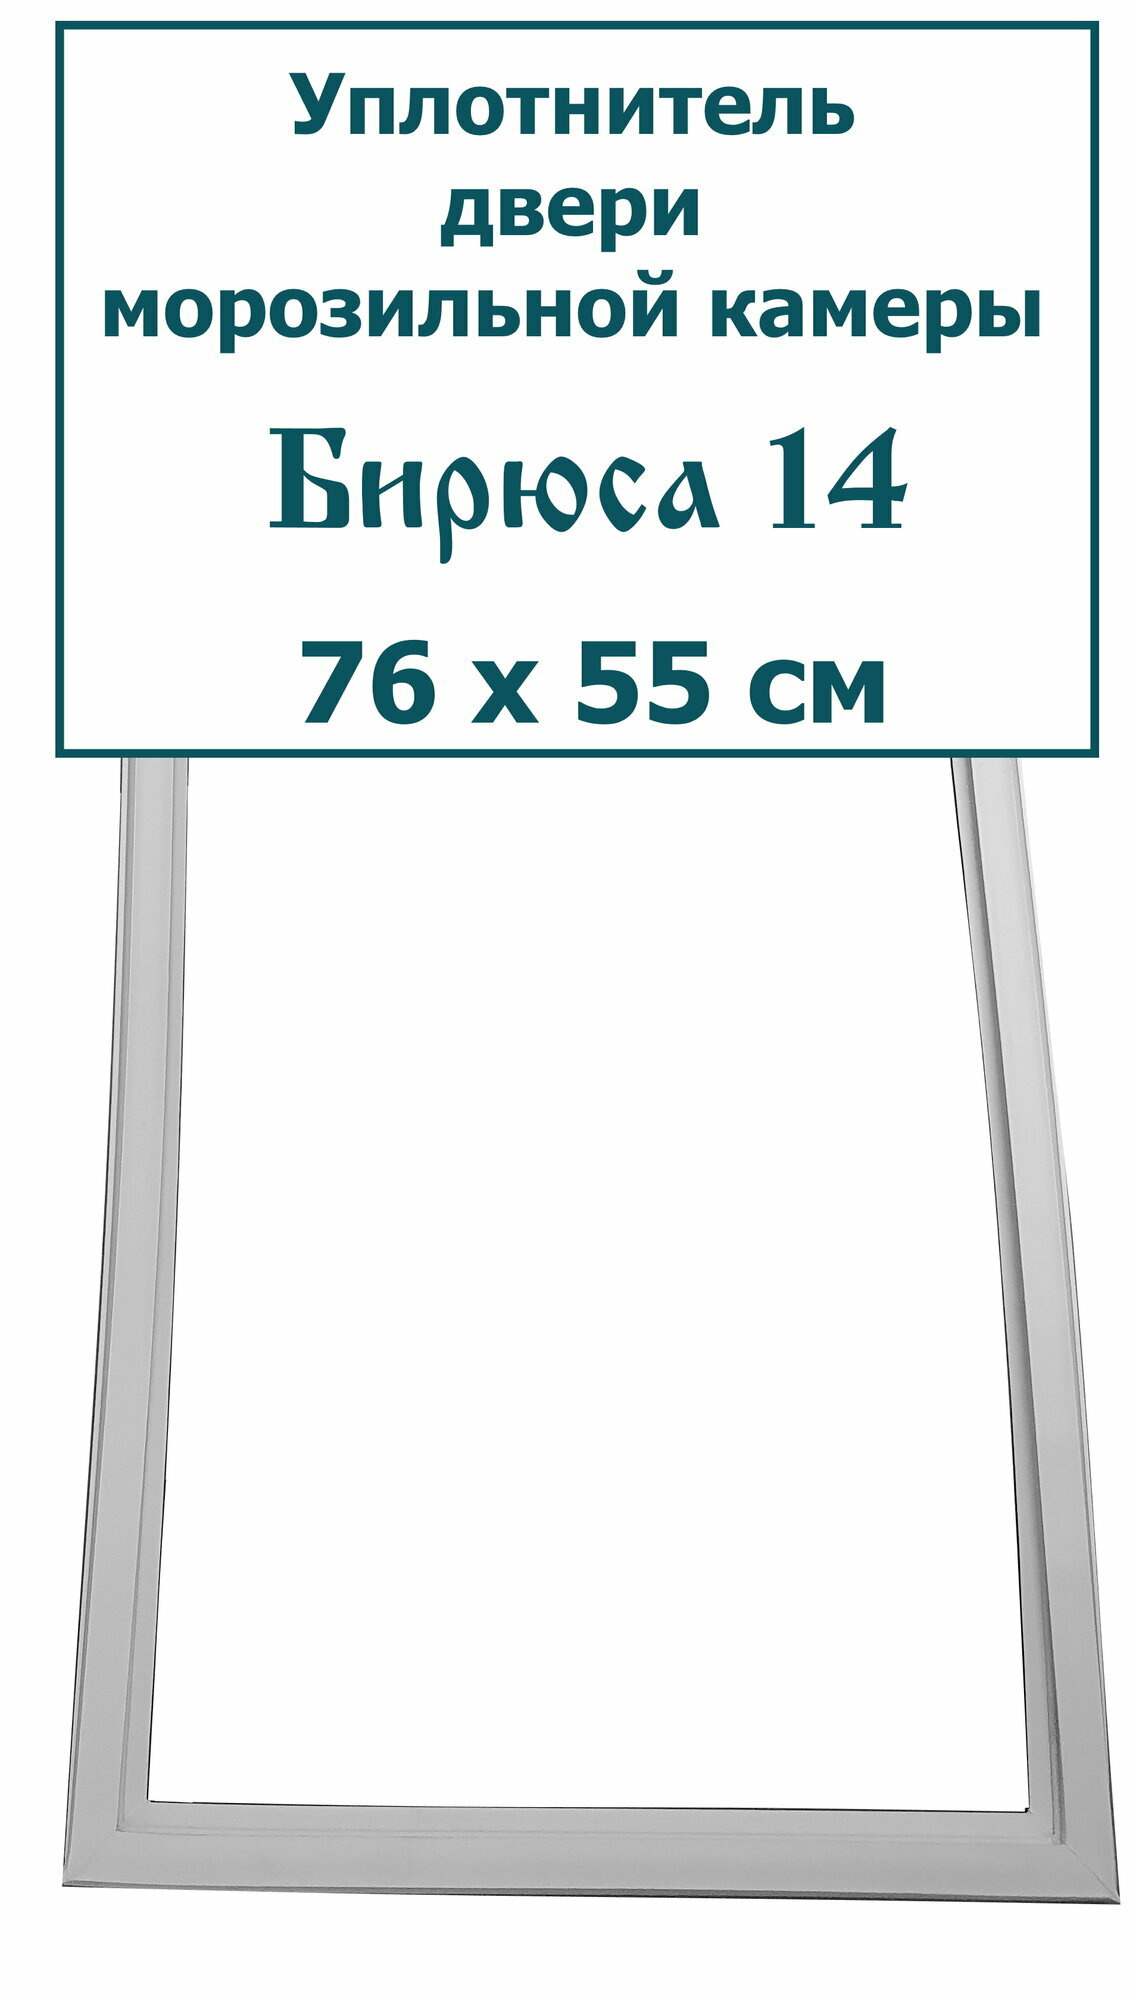 Уплотнитель (резинка) двери морозильной камеры Бирюса 14, 76 x 55 см (760 x 550 мм)